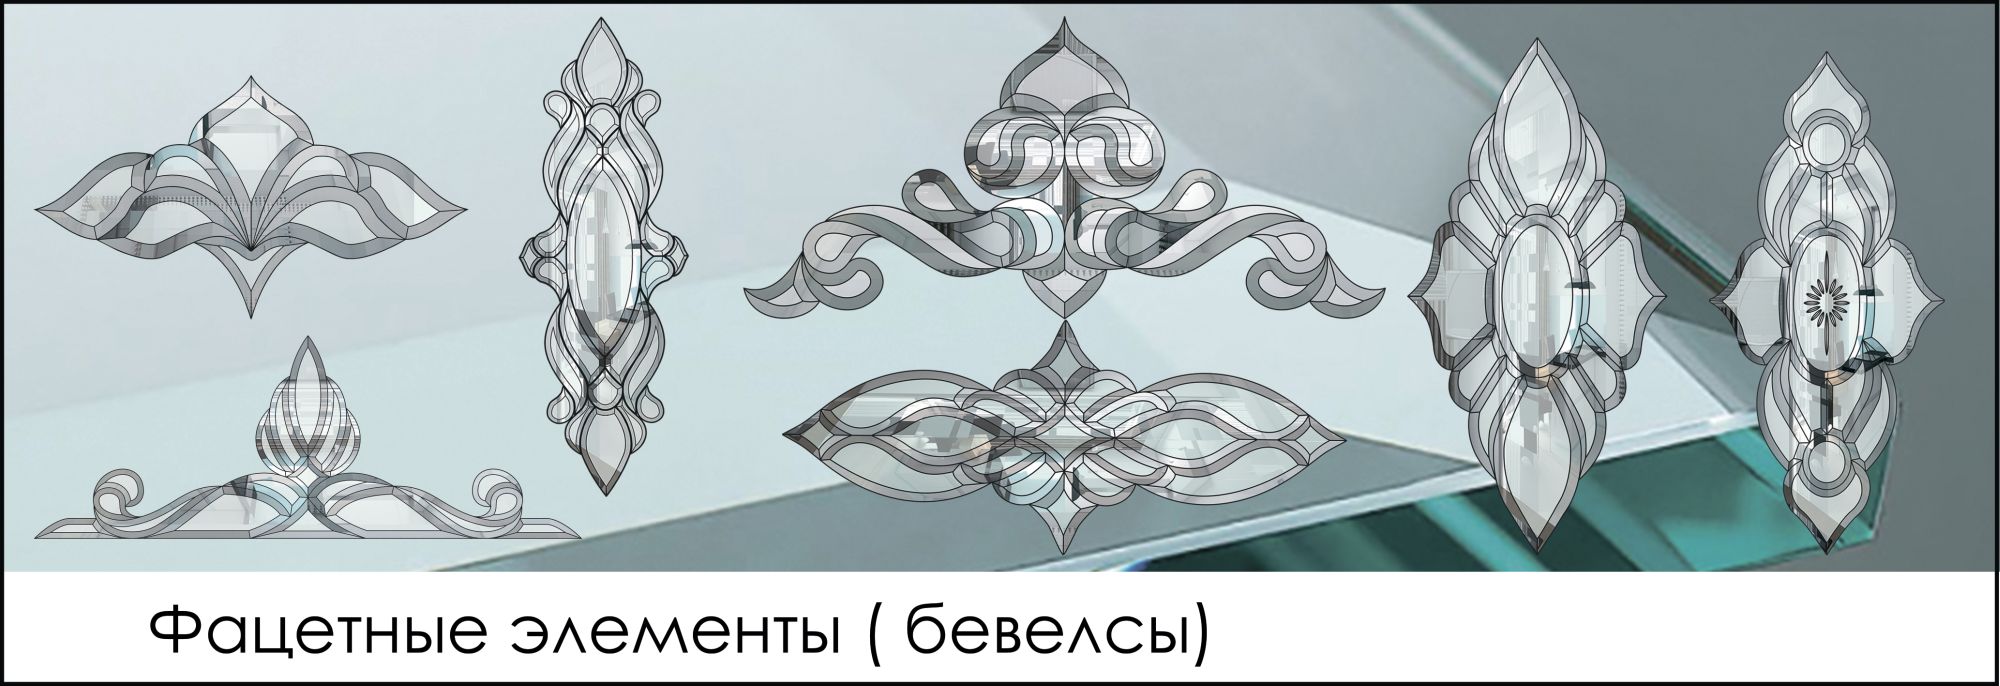 http://glass-m-tech.com.ua/image/catalog/category/b1.jpg